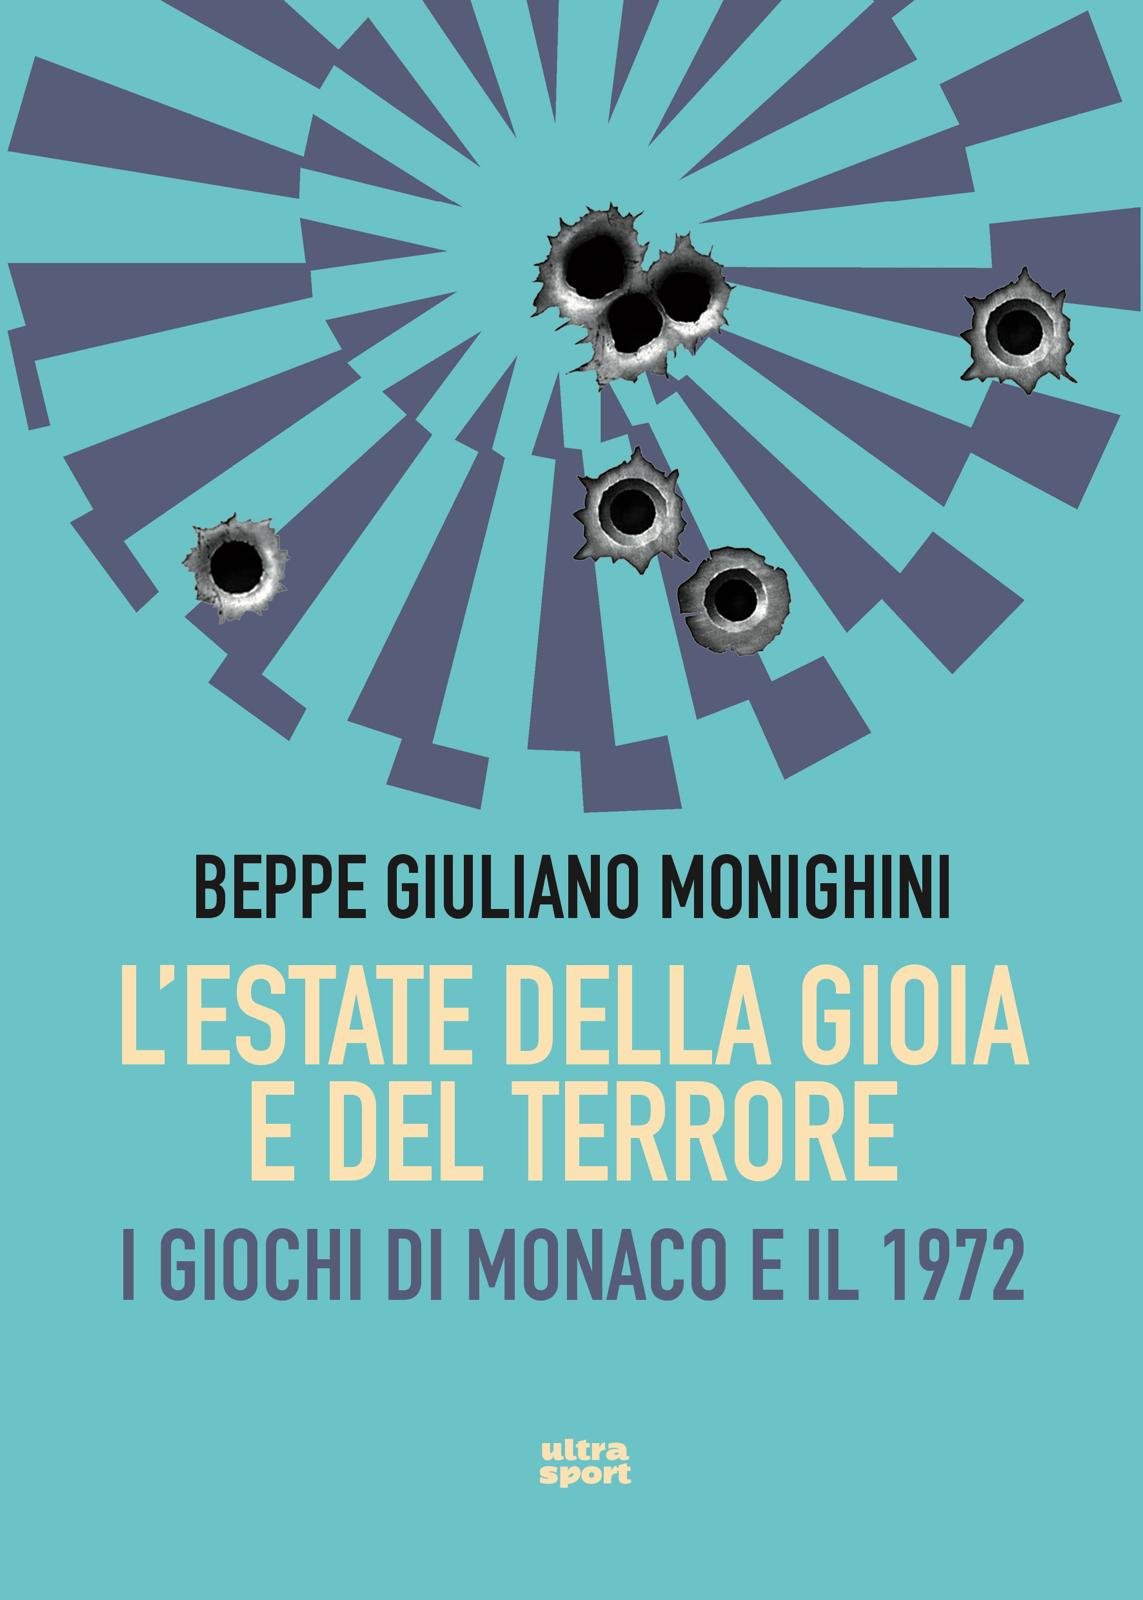 Il 10 settembre ad Alessandria Beppe Monighini presenta il libro “L’estate della gioia e del terrore. I giochi di Monaco e il 1972”